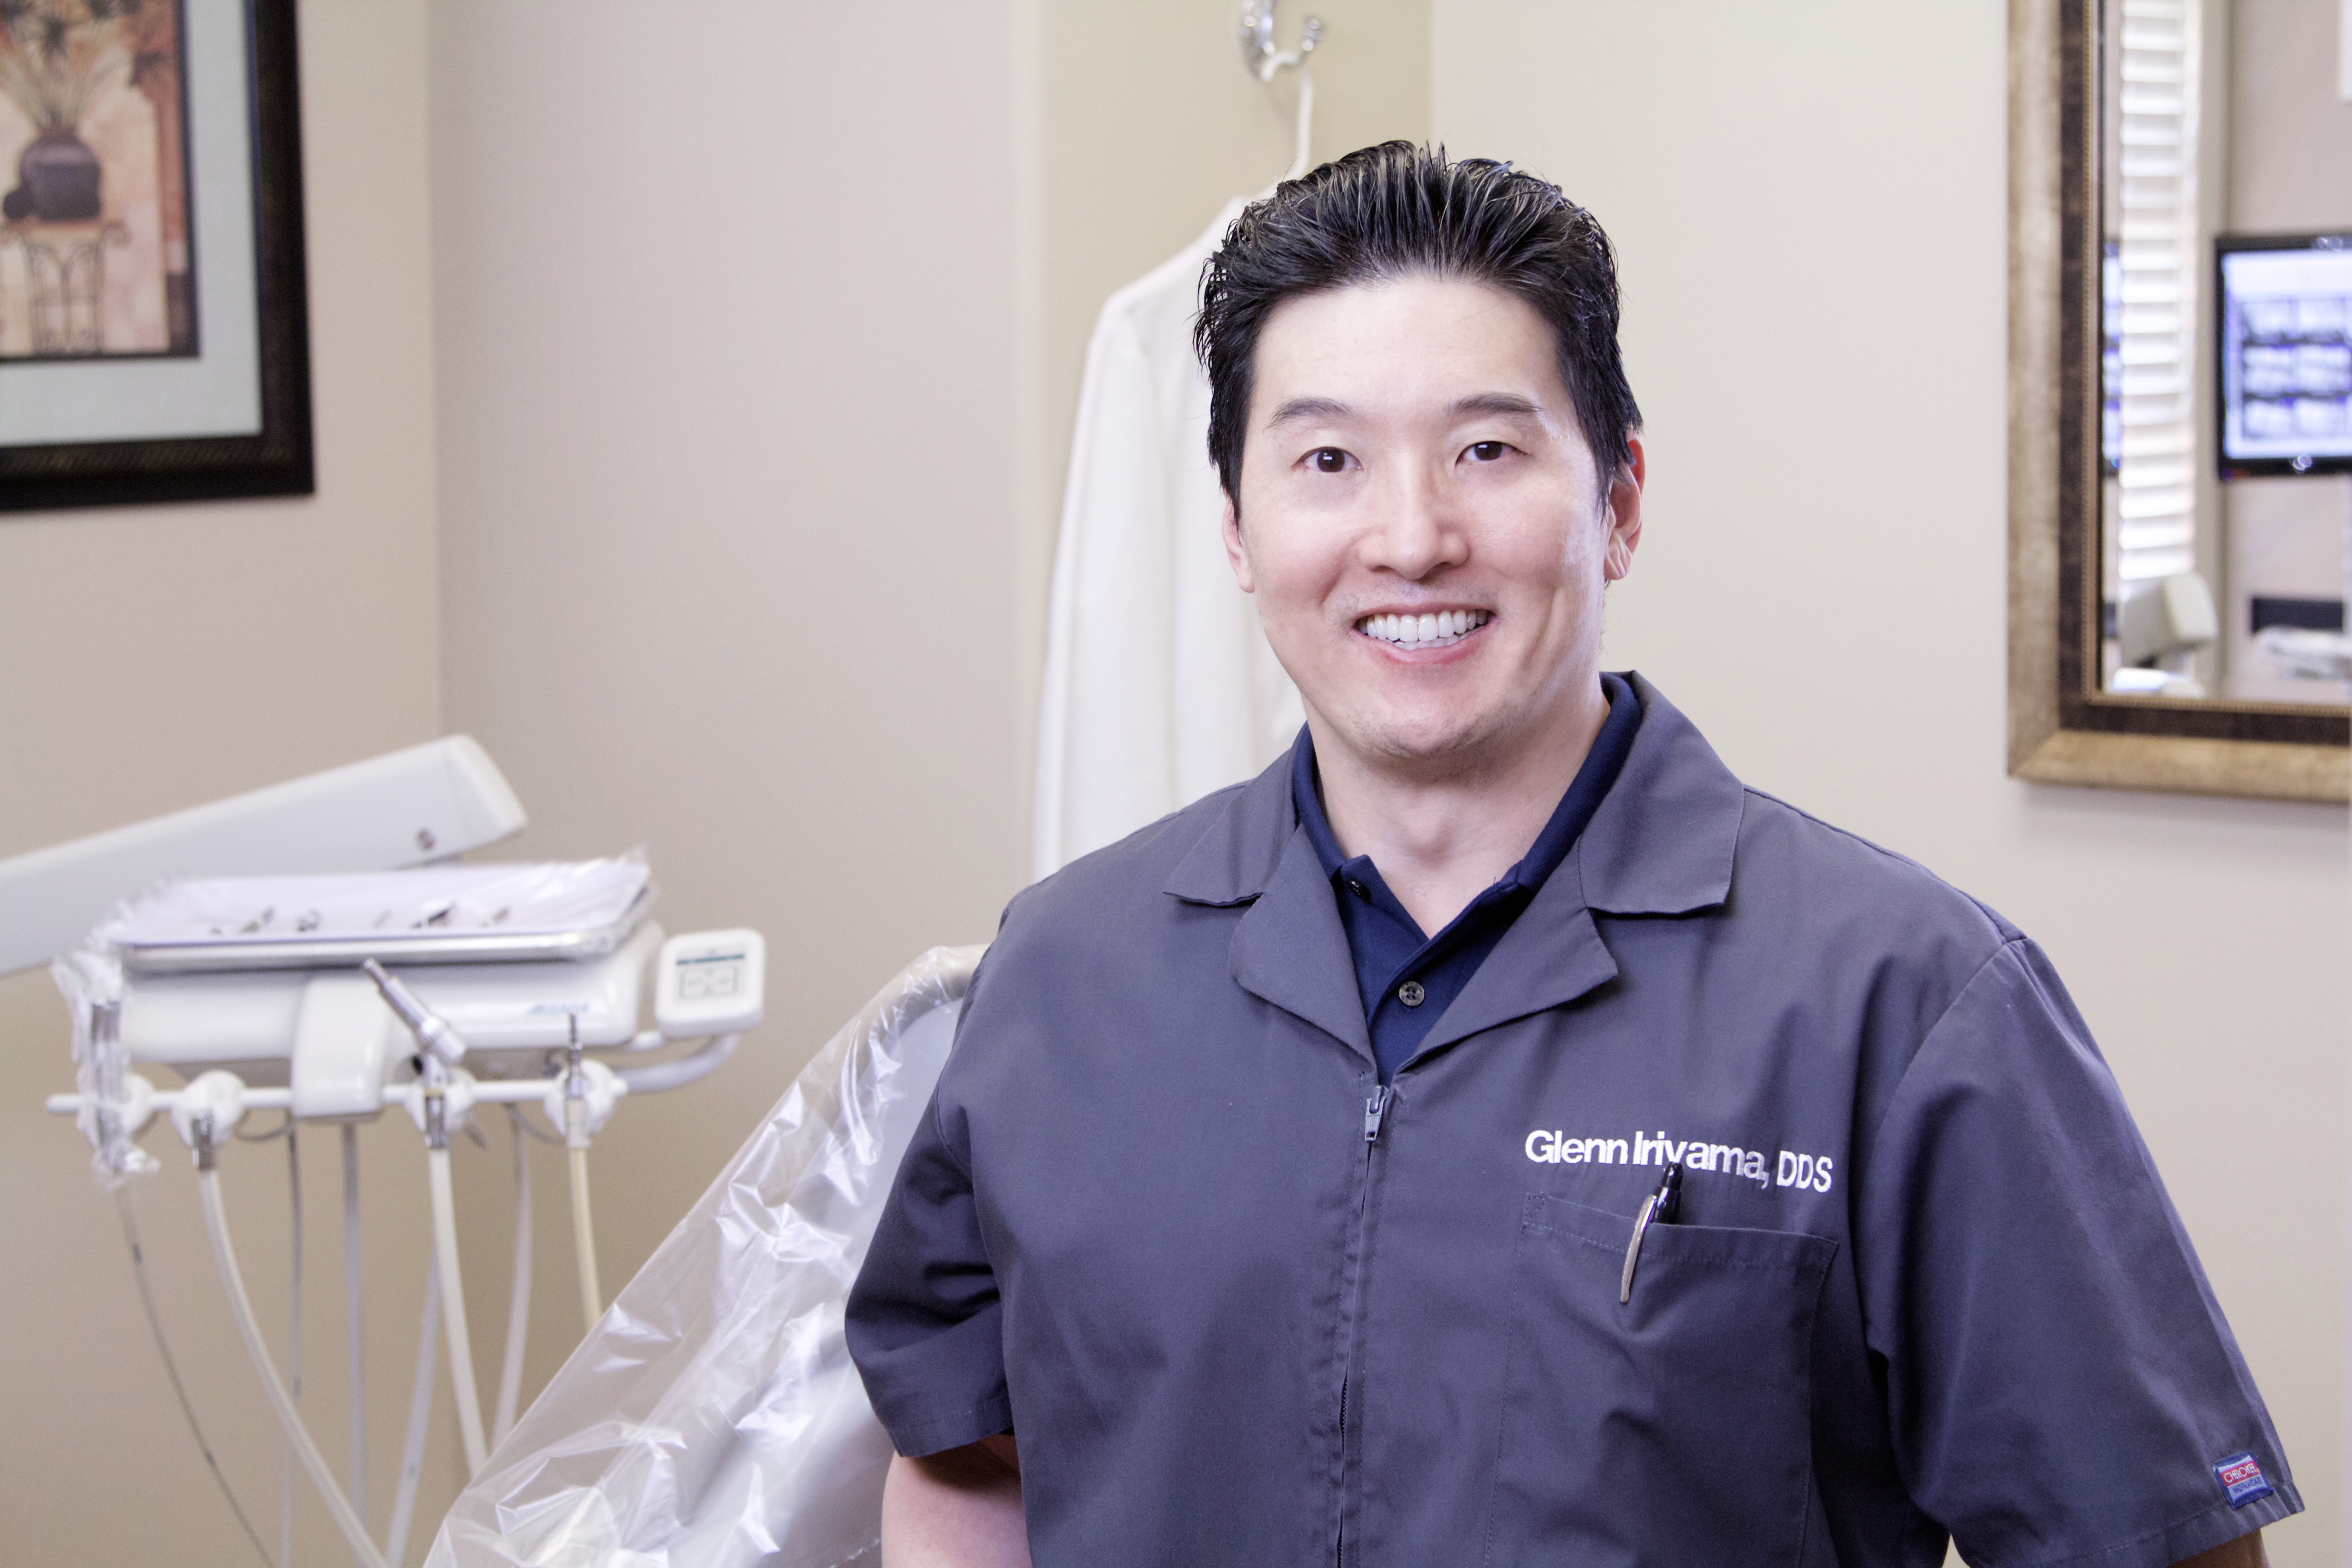 Glenn-Iriyama-Tustin-Dentist